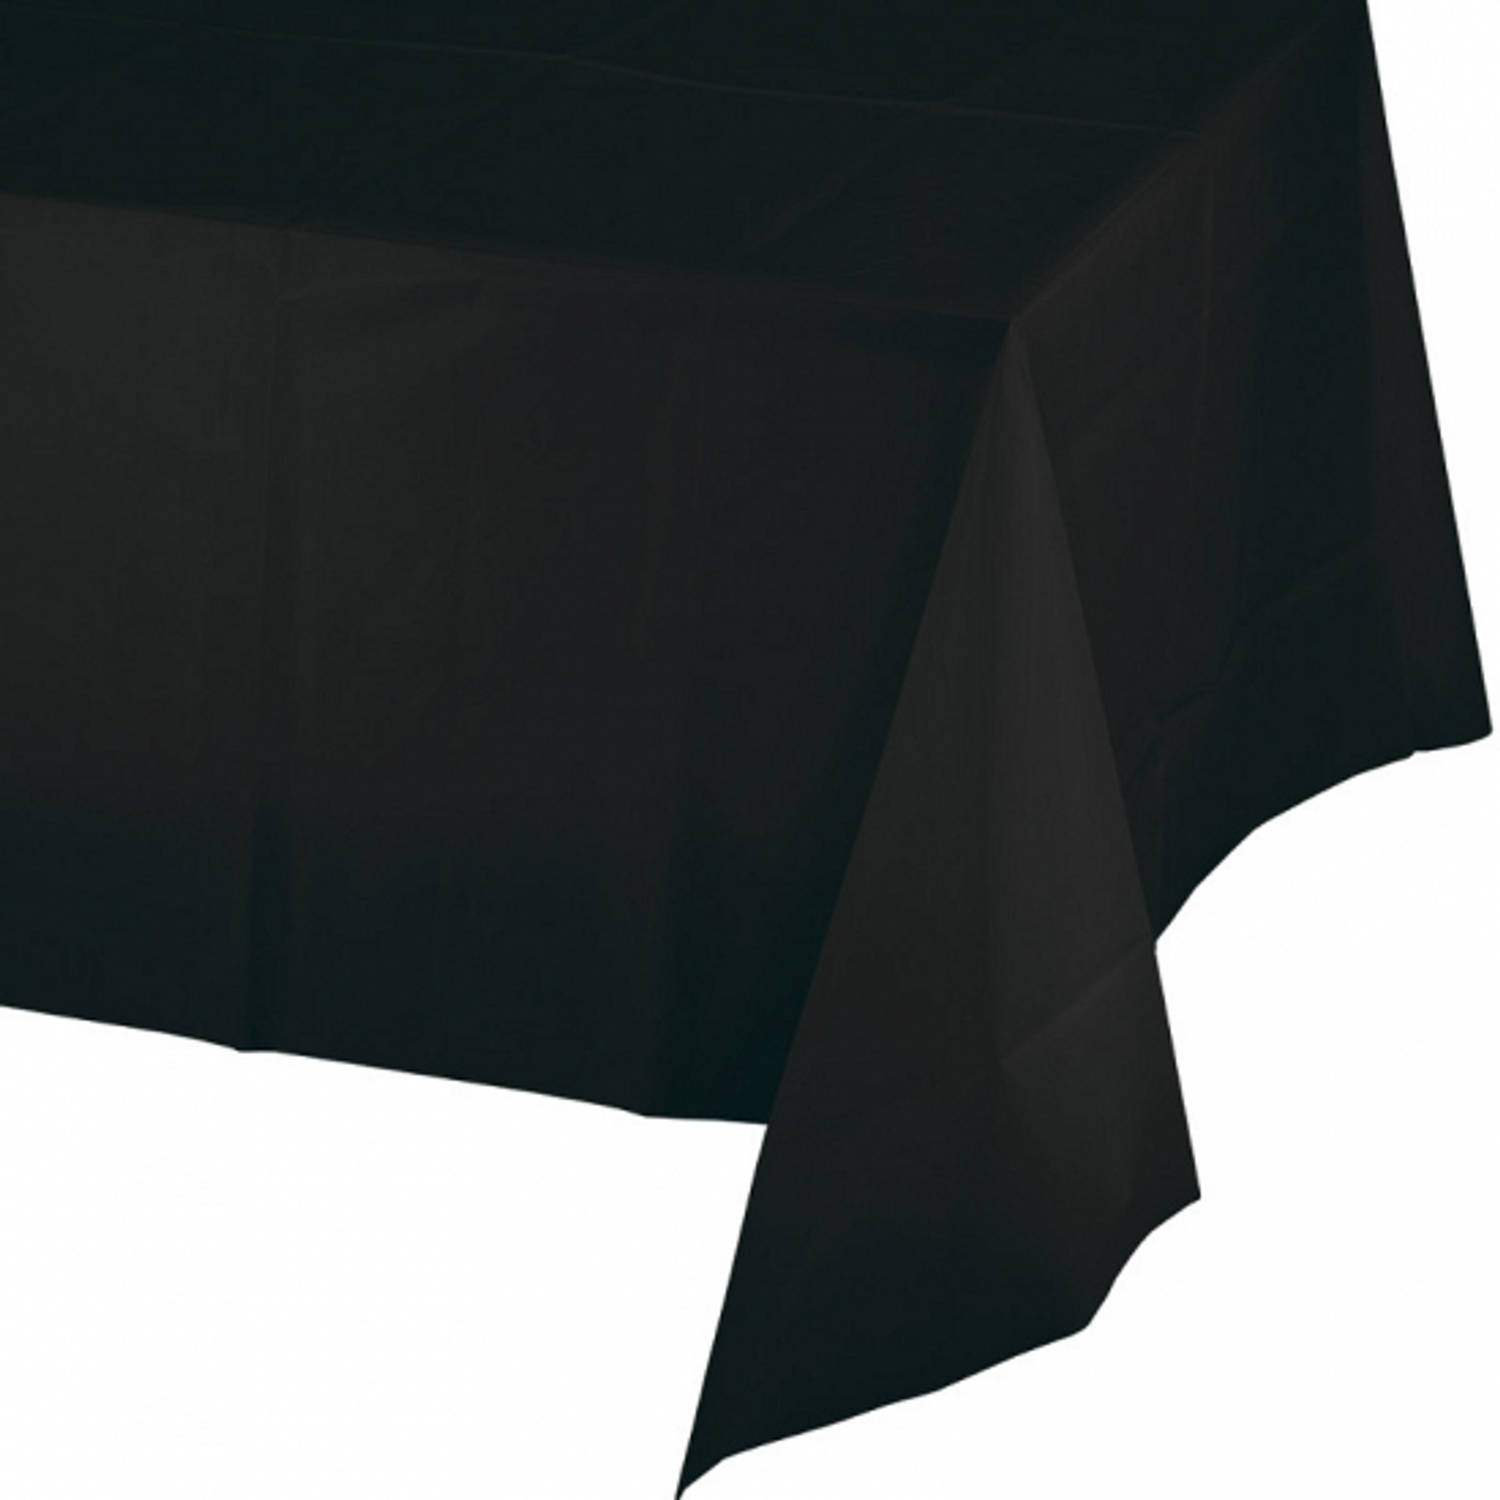 Tafelkleed zwart 274 x 137 cm Feesttafelkleden | Blokker